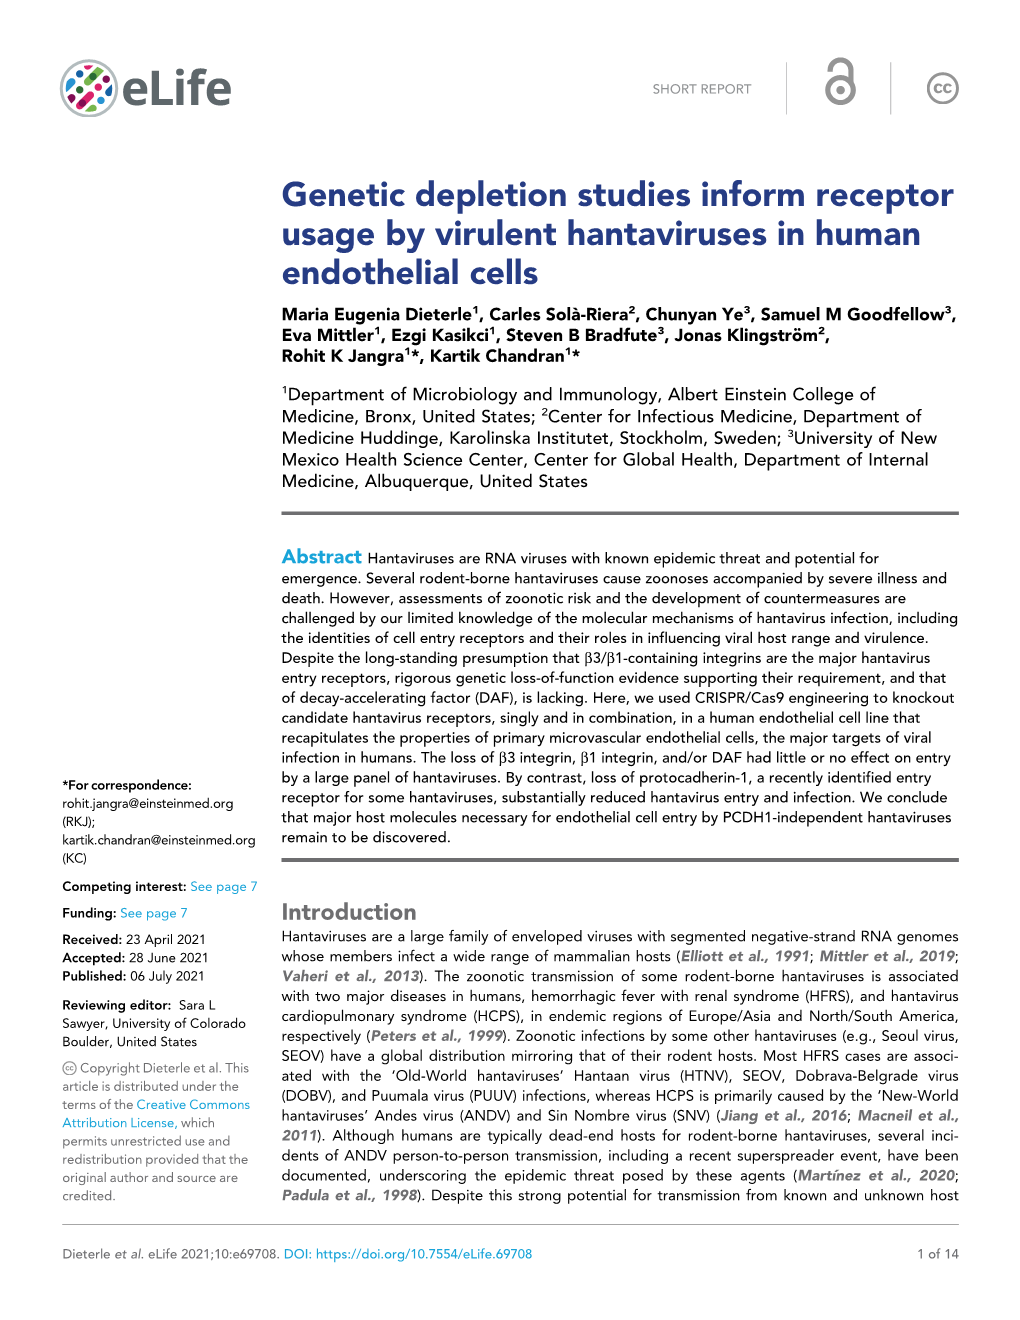 Genetic Depletion Studies Inform Receptor Usage by Virulent